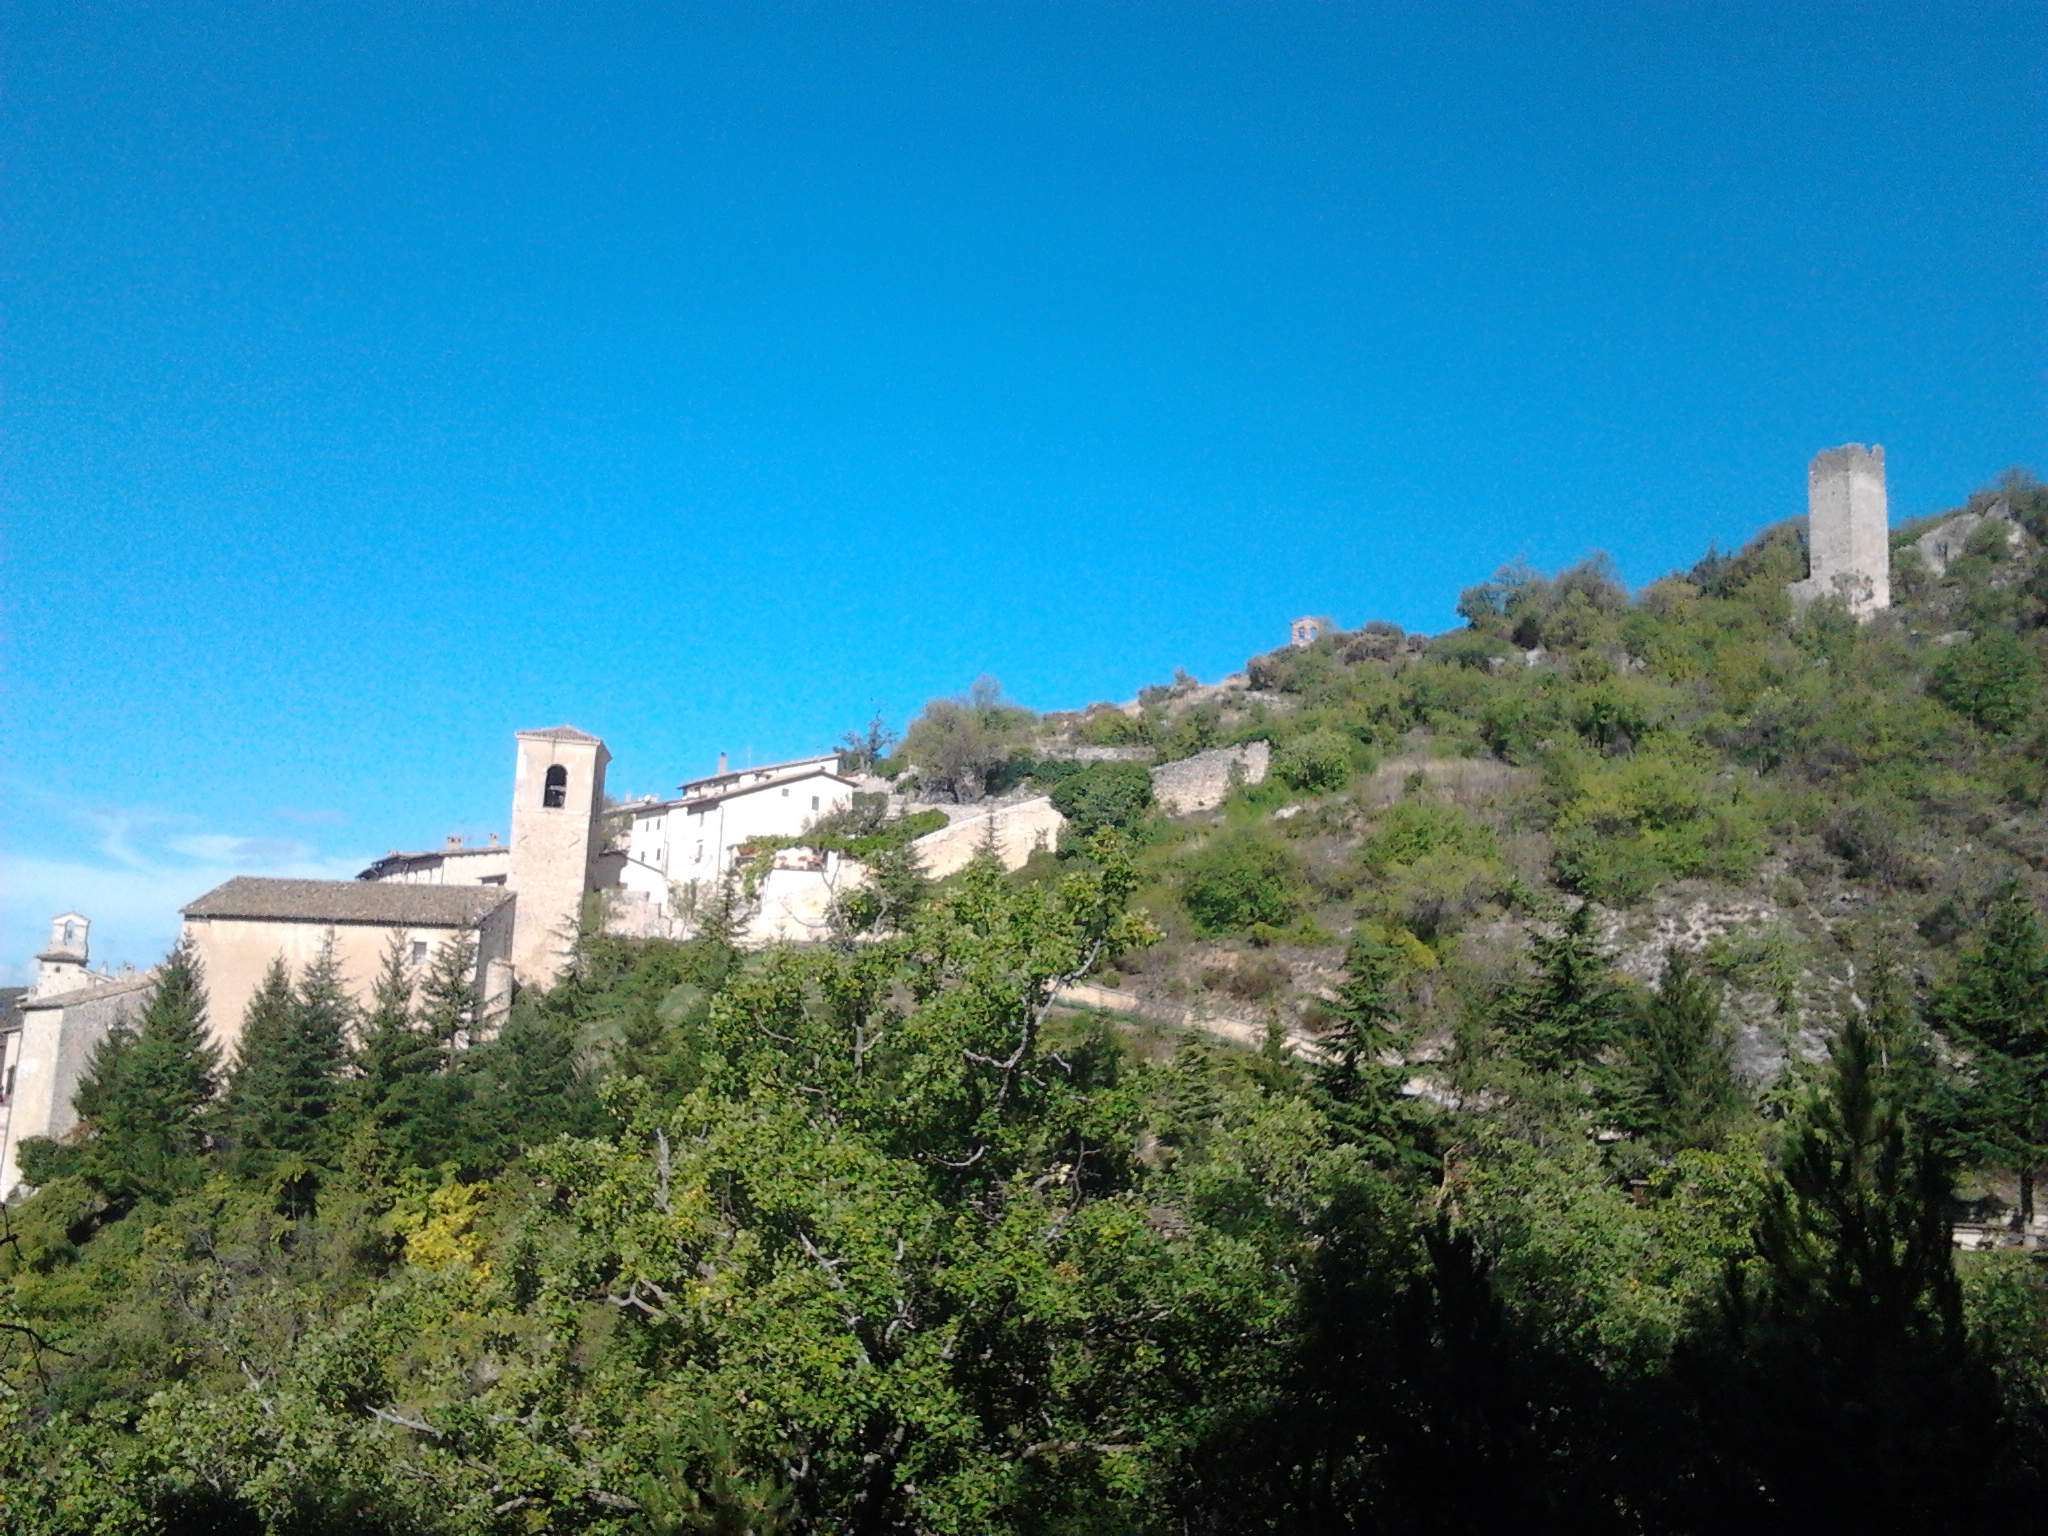 Pomeriggio nella favolosa valle Castoriana e l'antichissima abbazia di S.Eutizio